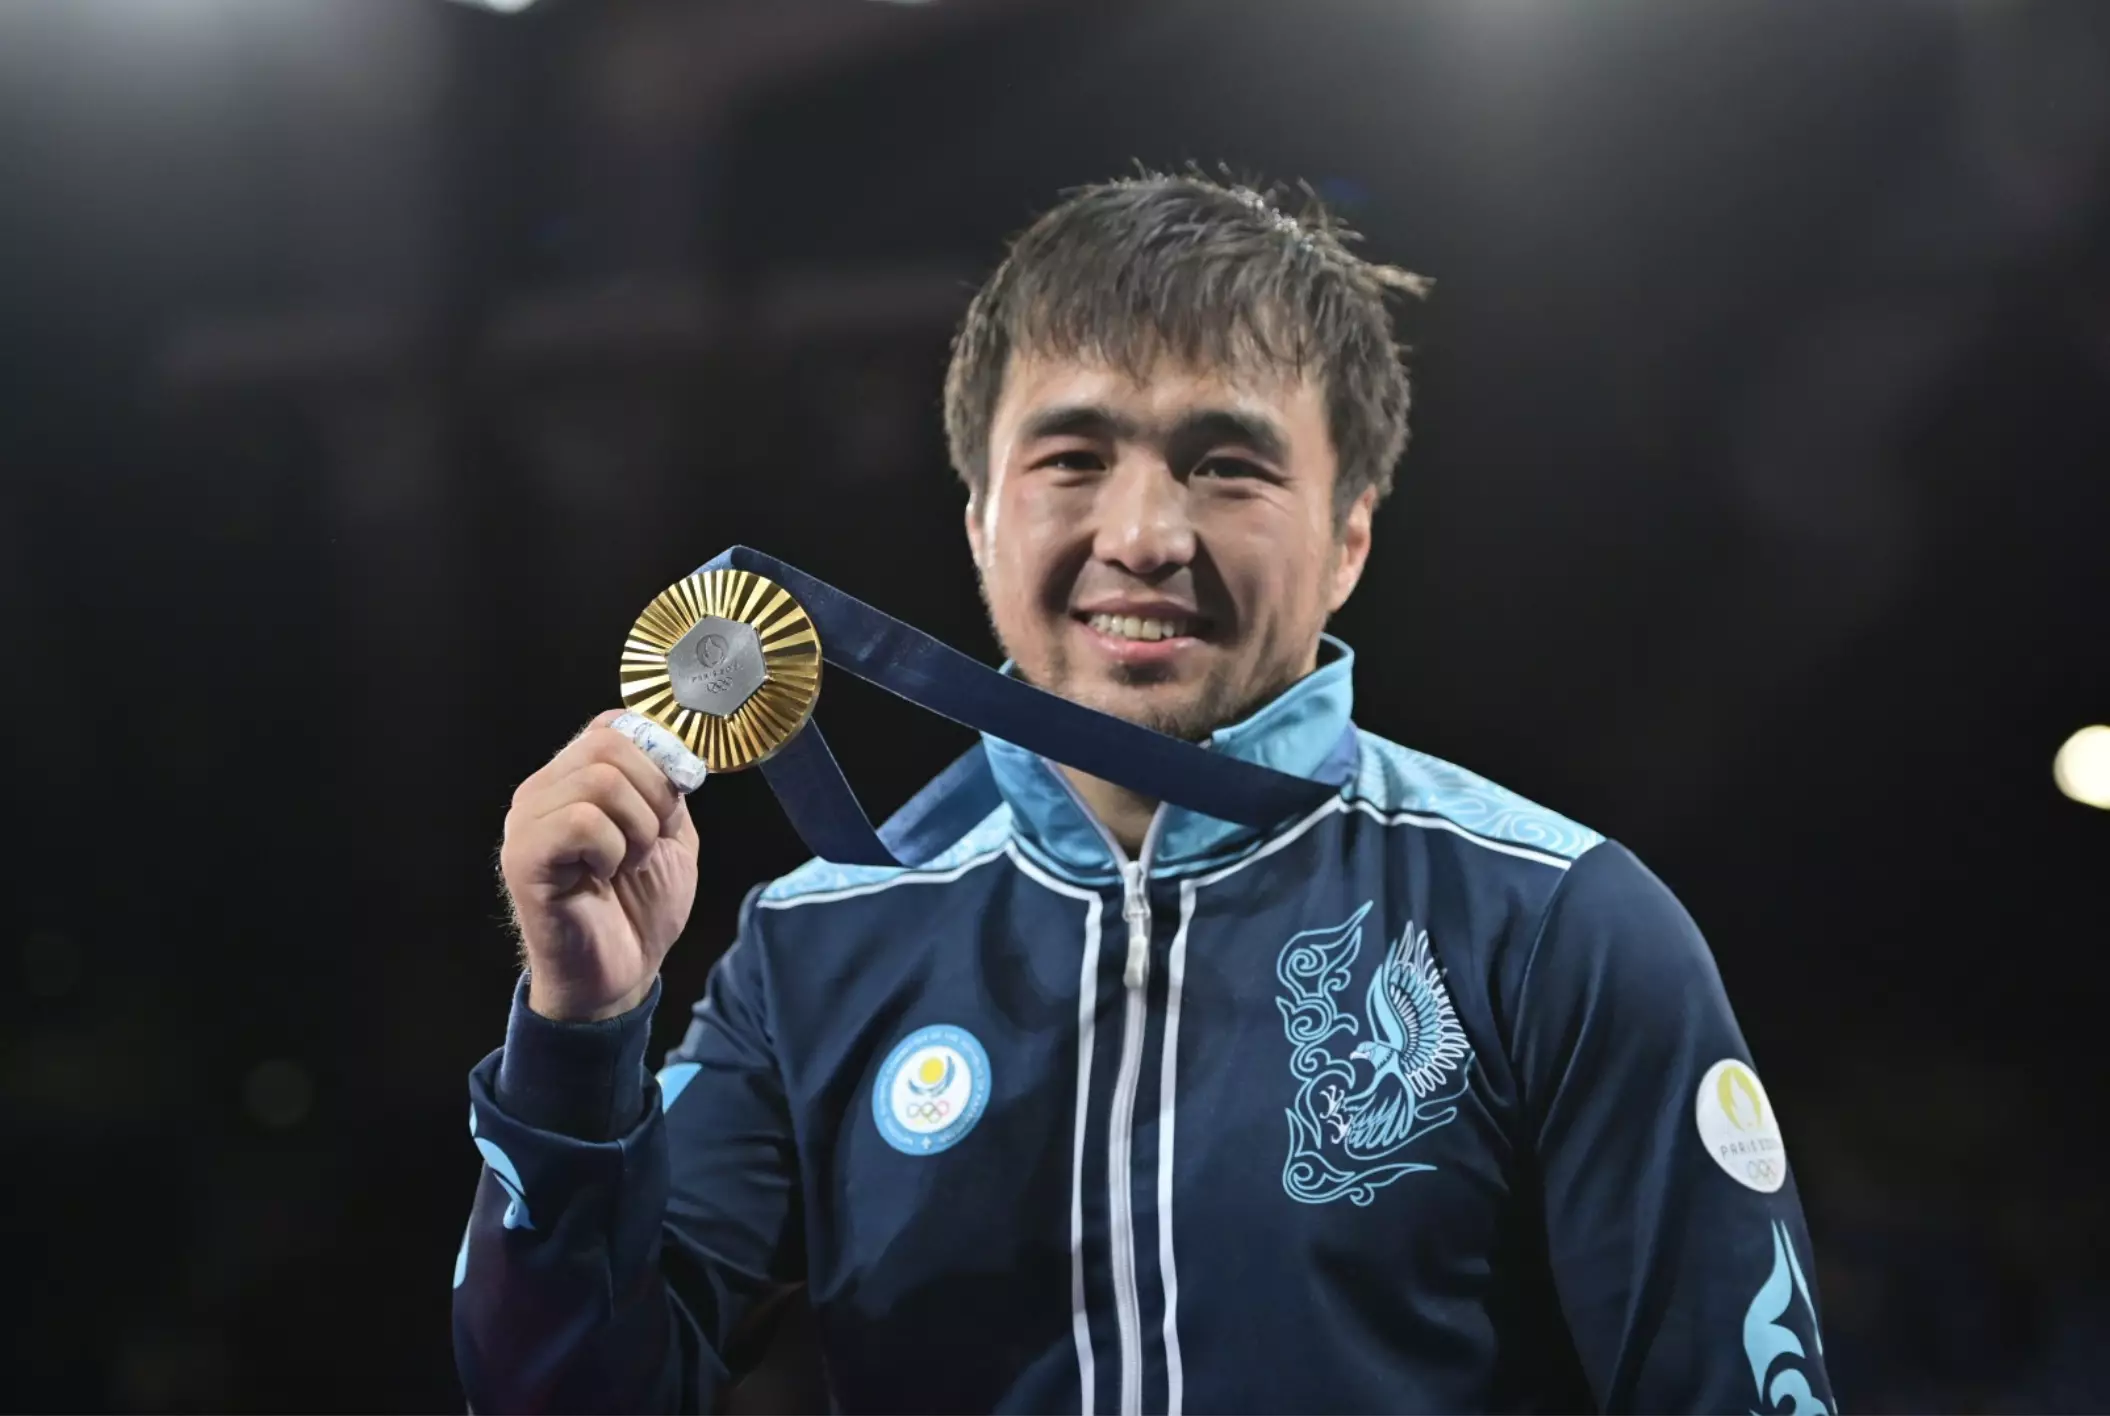 Казахстан впервые в истории занял второе место в мировом олимпийском рейтинге по дзюдо